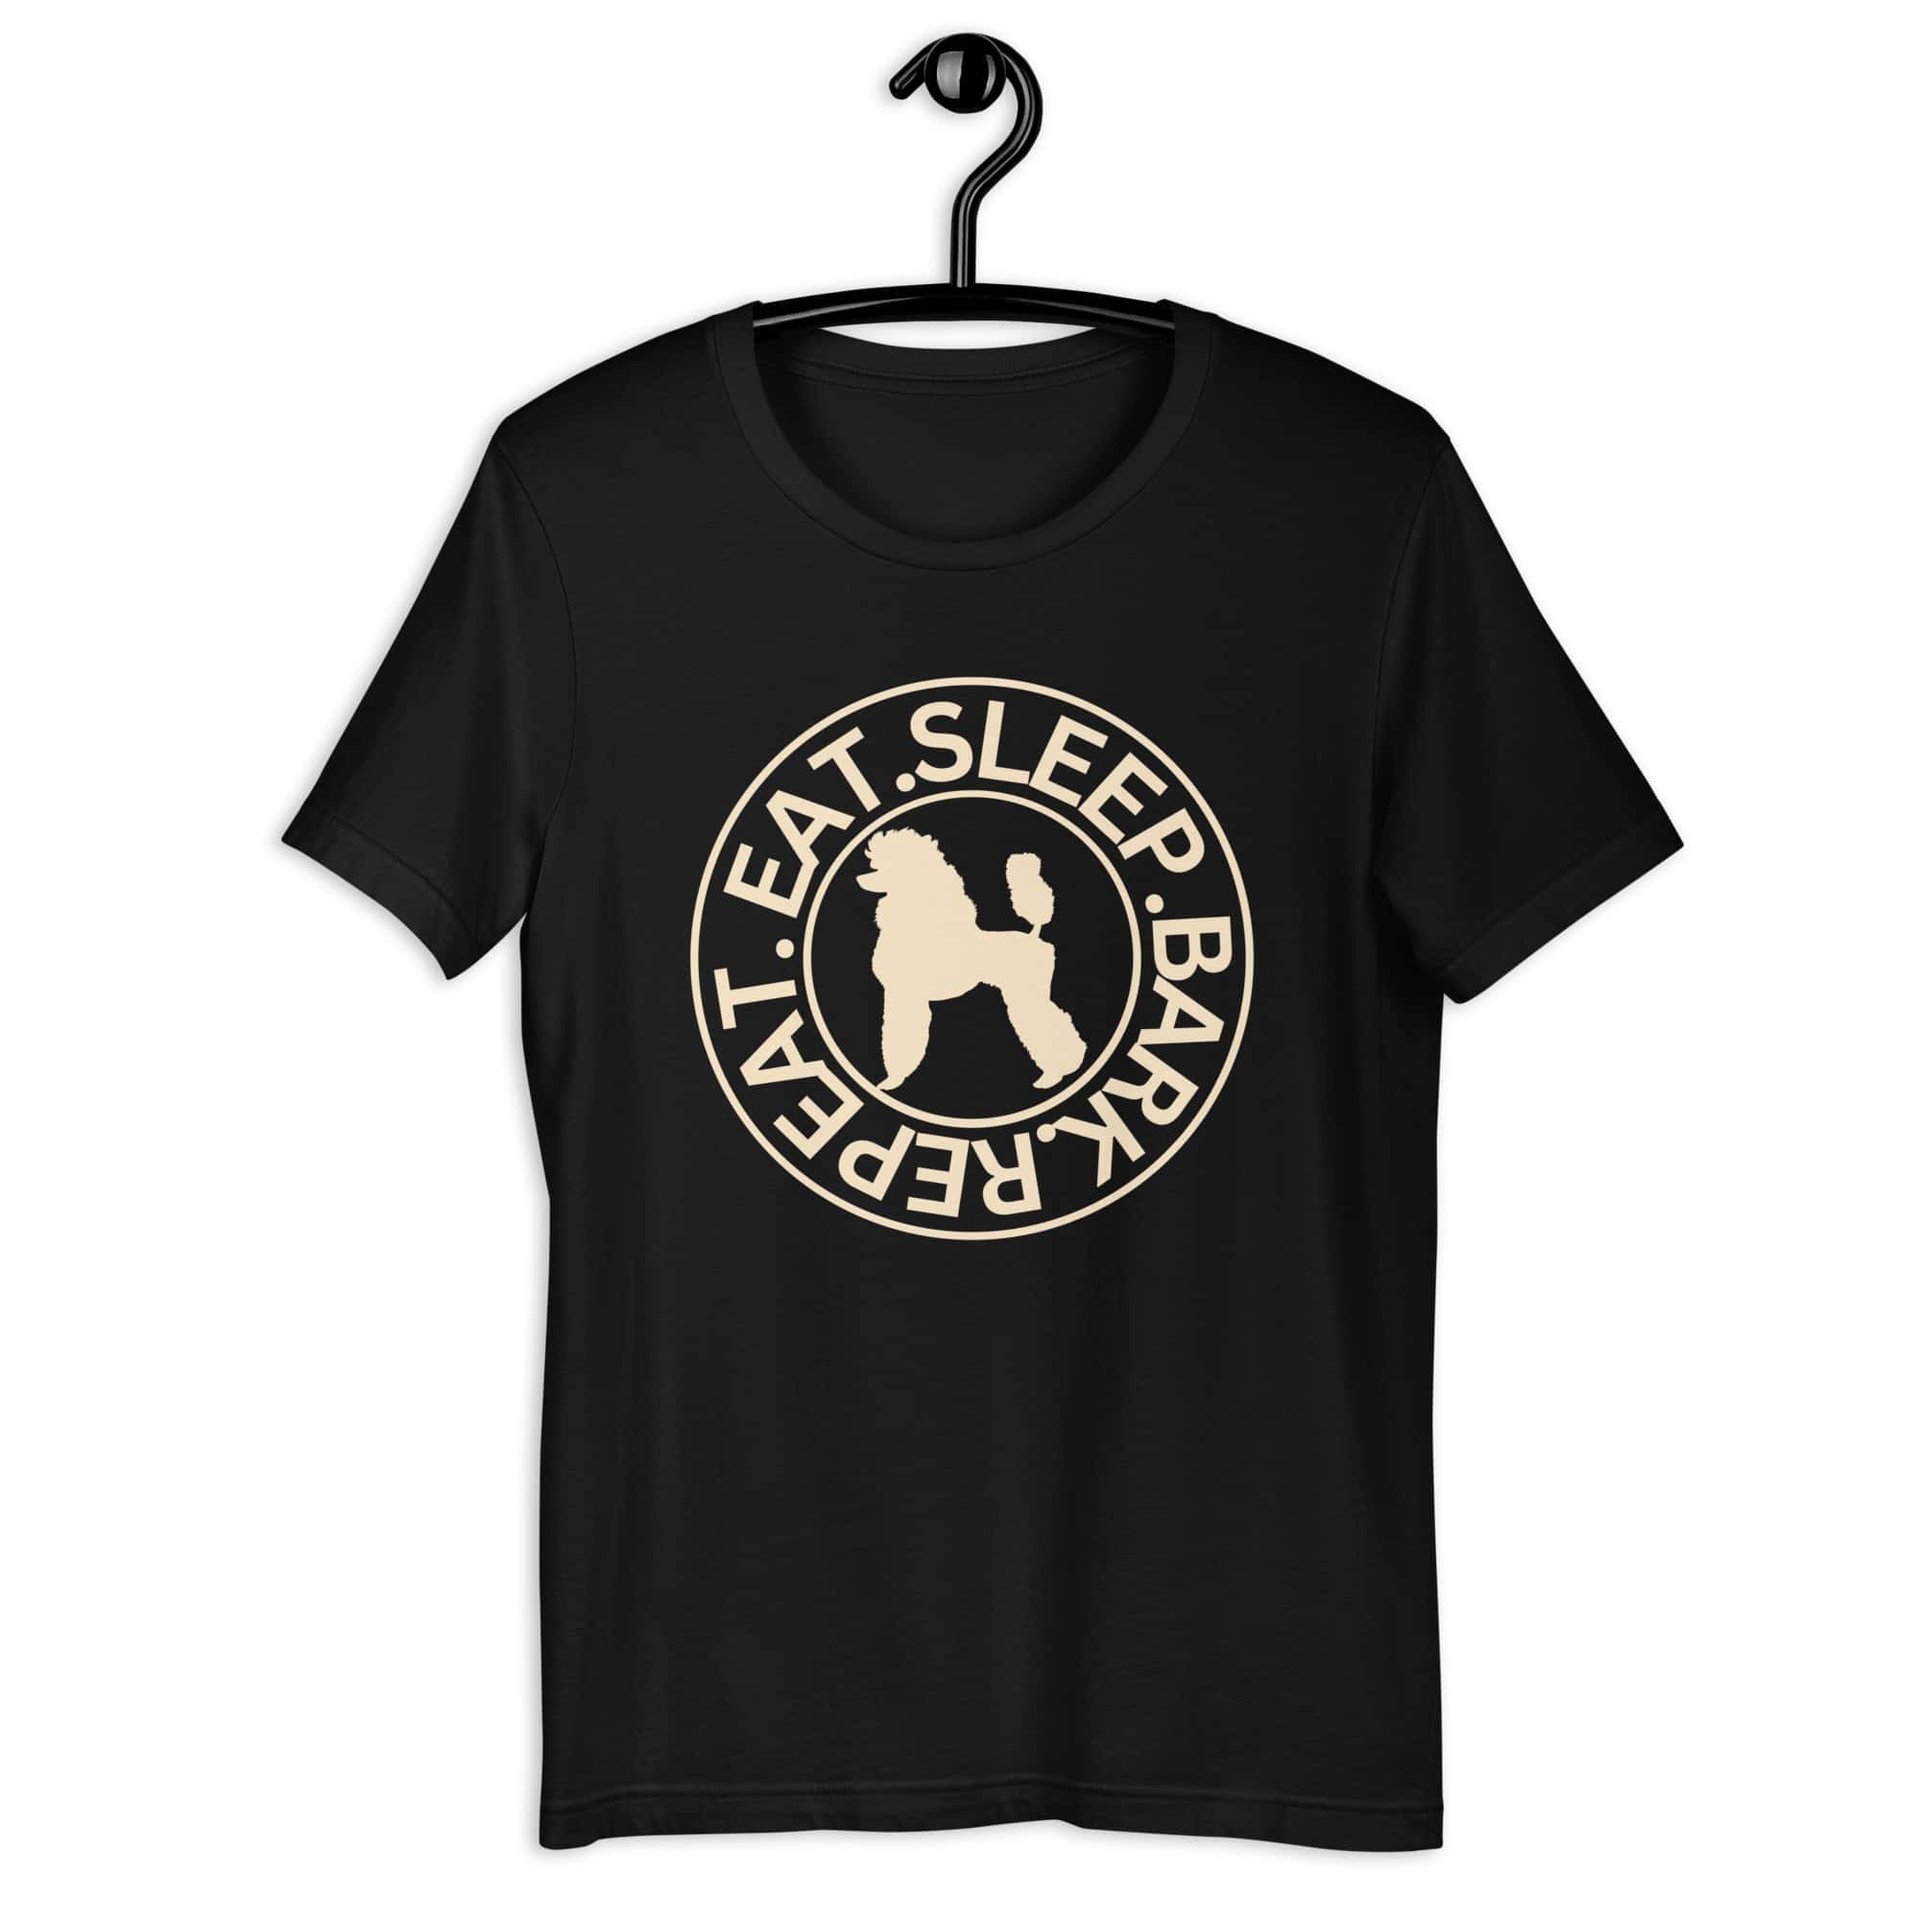 Eat Sleep Repeat Bark Miniature Poodle Unisex T-Shirt. Black